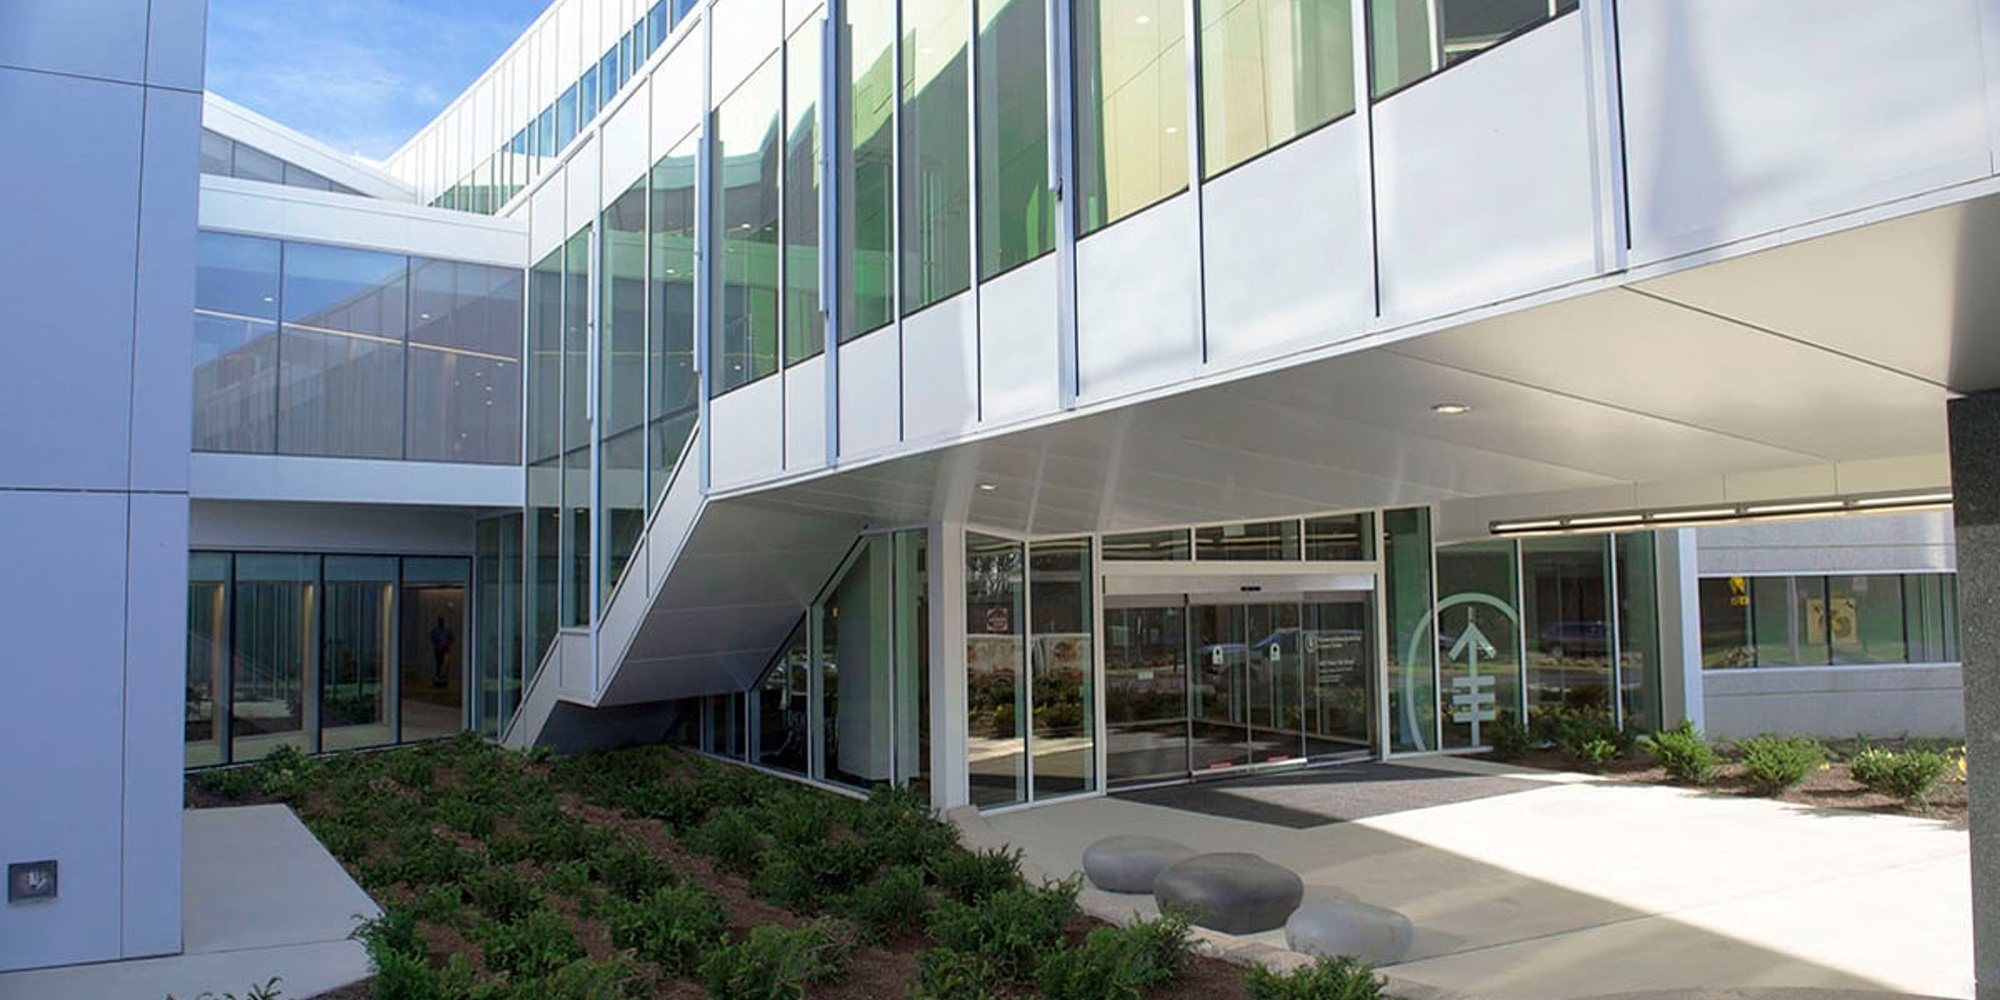 Moderno y con zonas verdes: así es el hospital de Nueva Jersey en el que Álex Lequio continuará su tratamiento